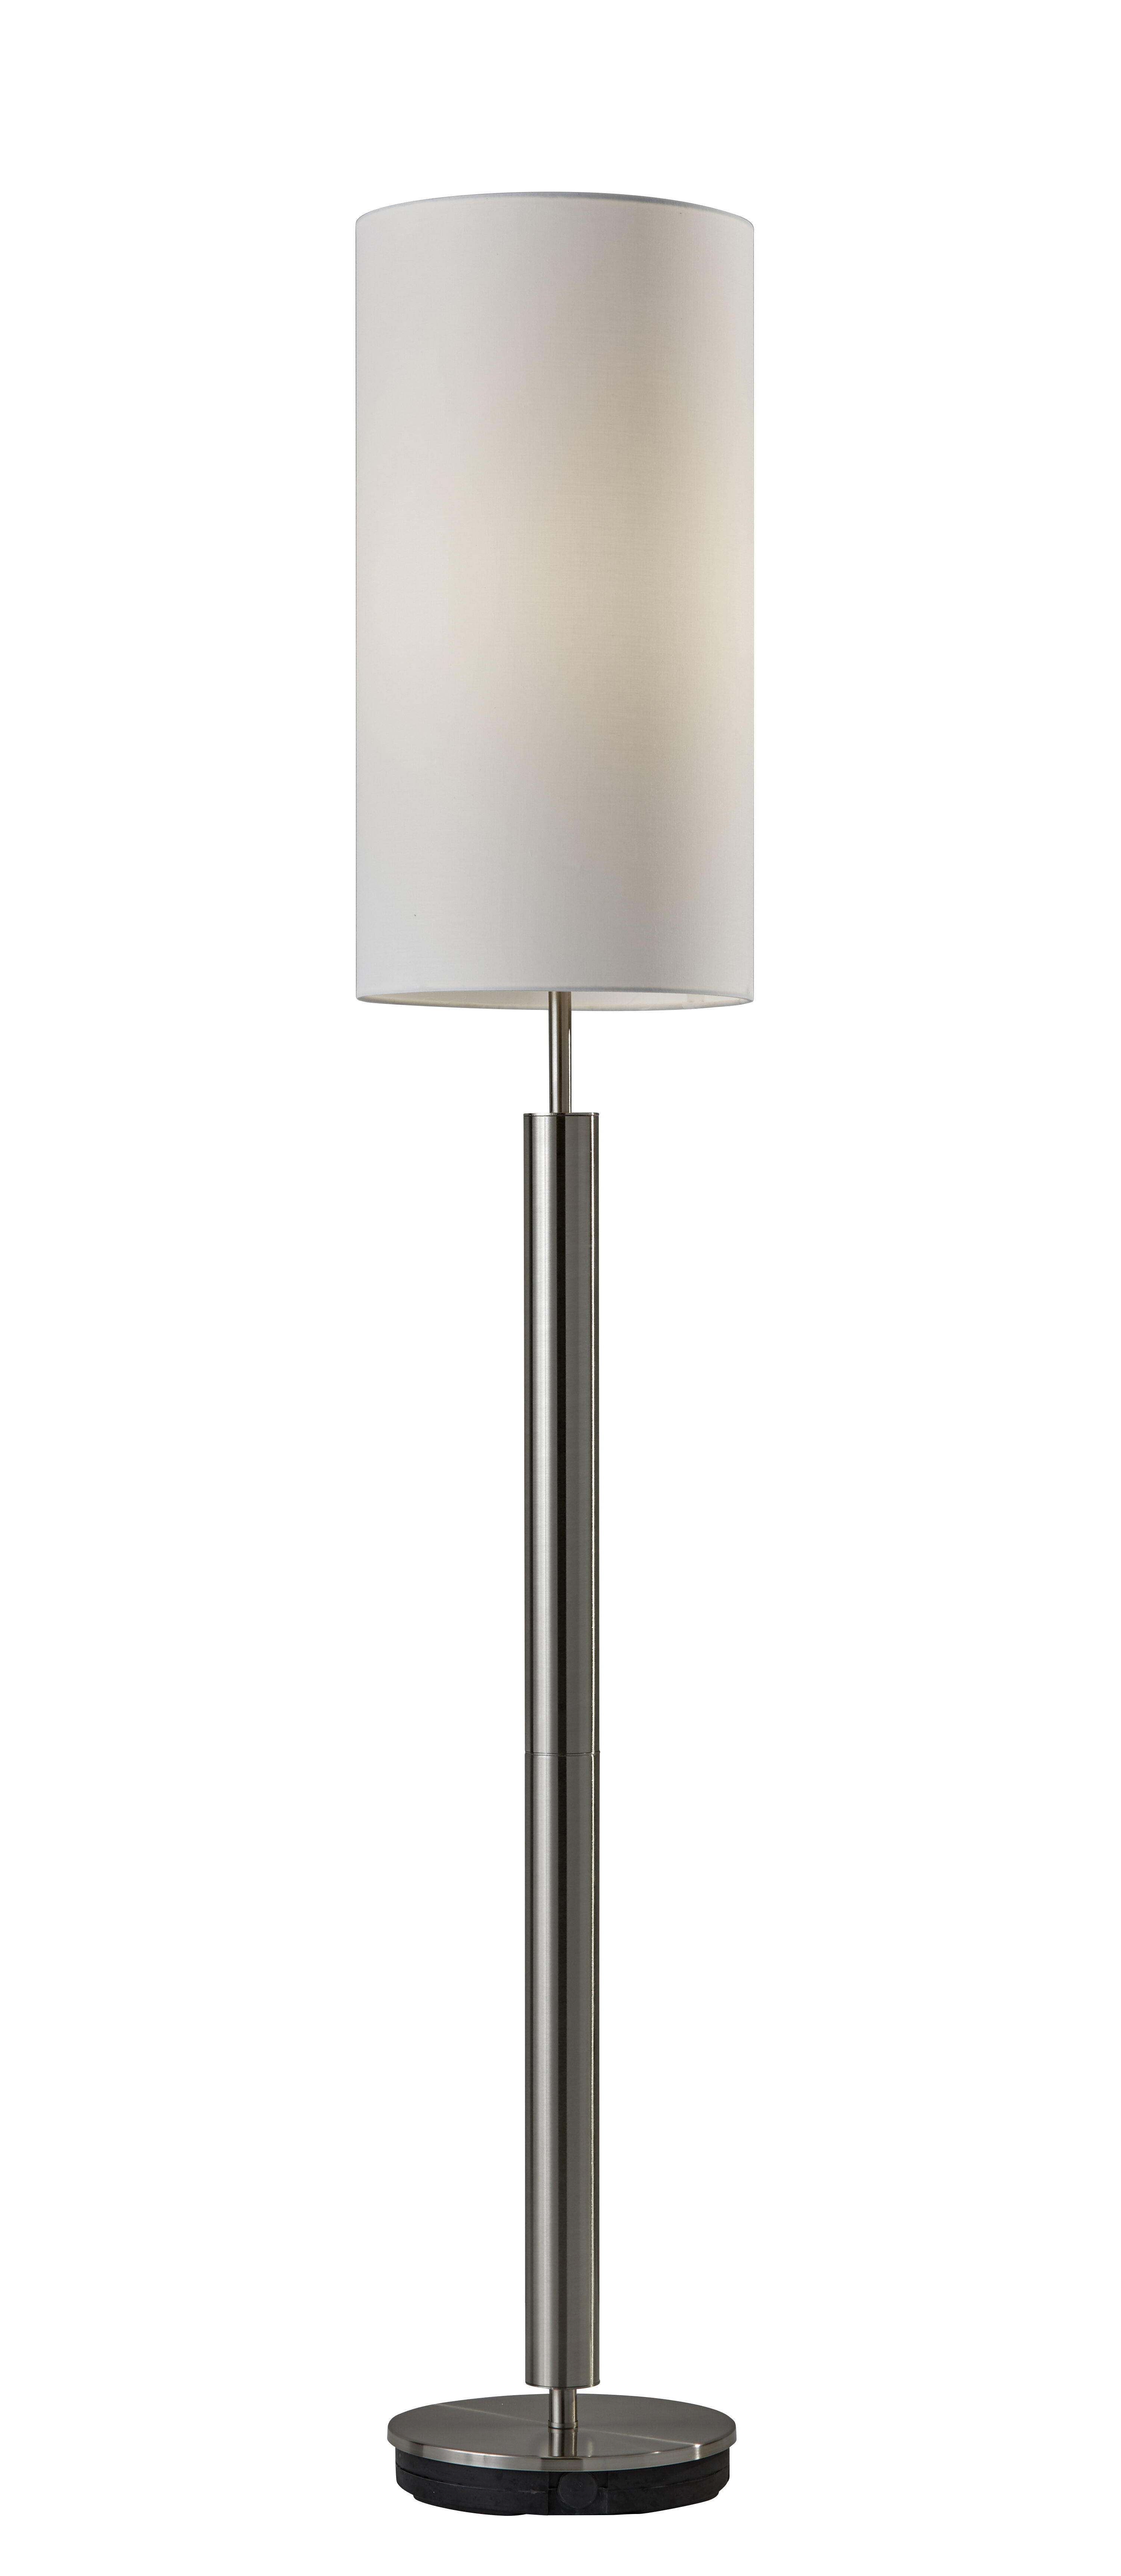 Carshalt 58 Column Floor Lamp with sizing 3000 X 6895